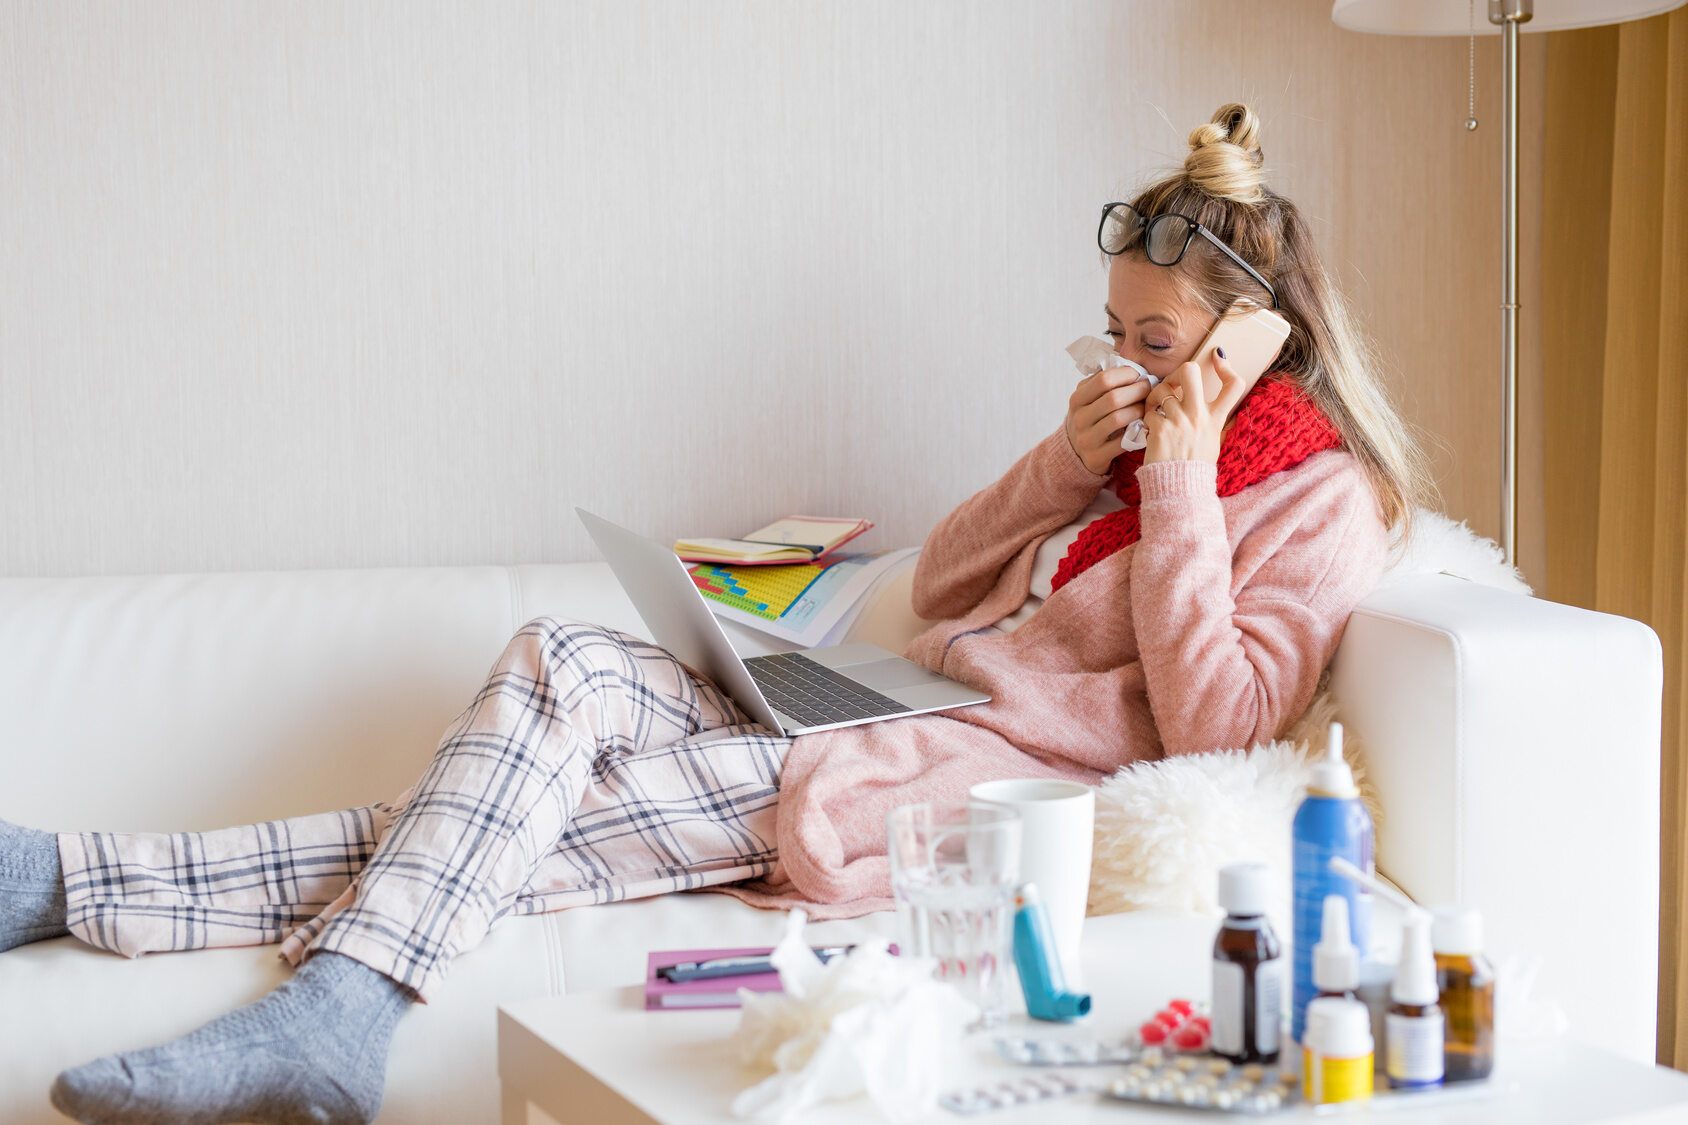 Jeżeli kobieta zachoruje na grypę, to zwalczy infekcję szybciej niż mężczyzna dzięki: